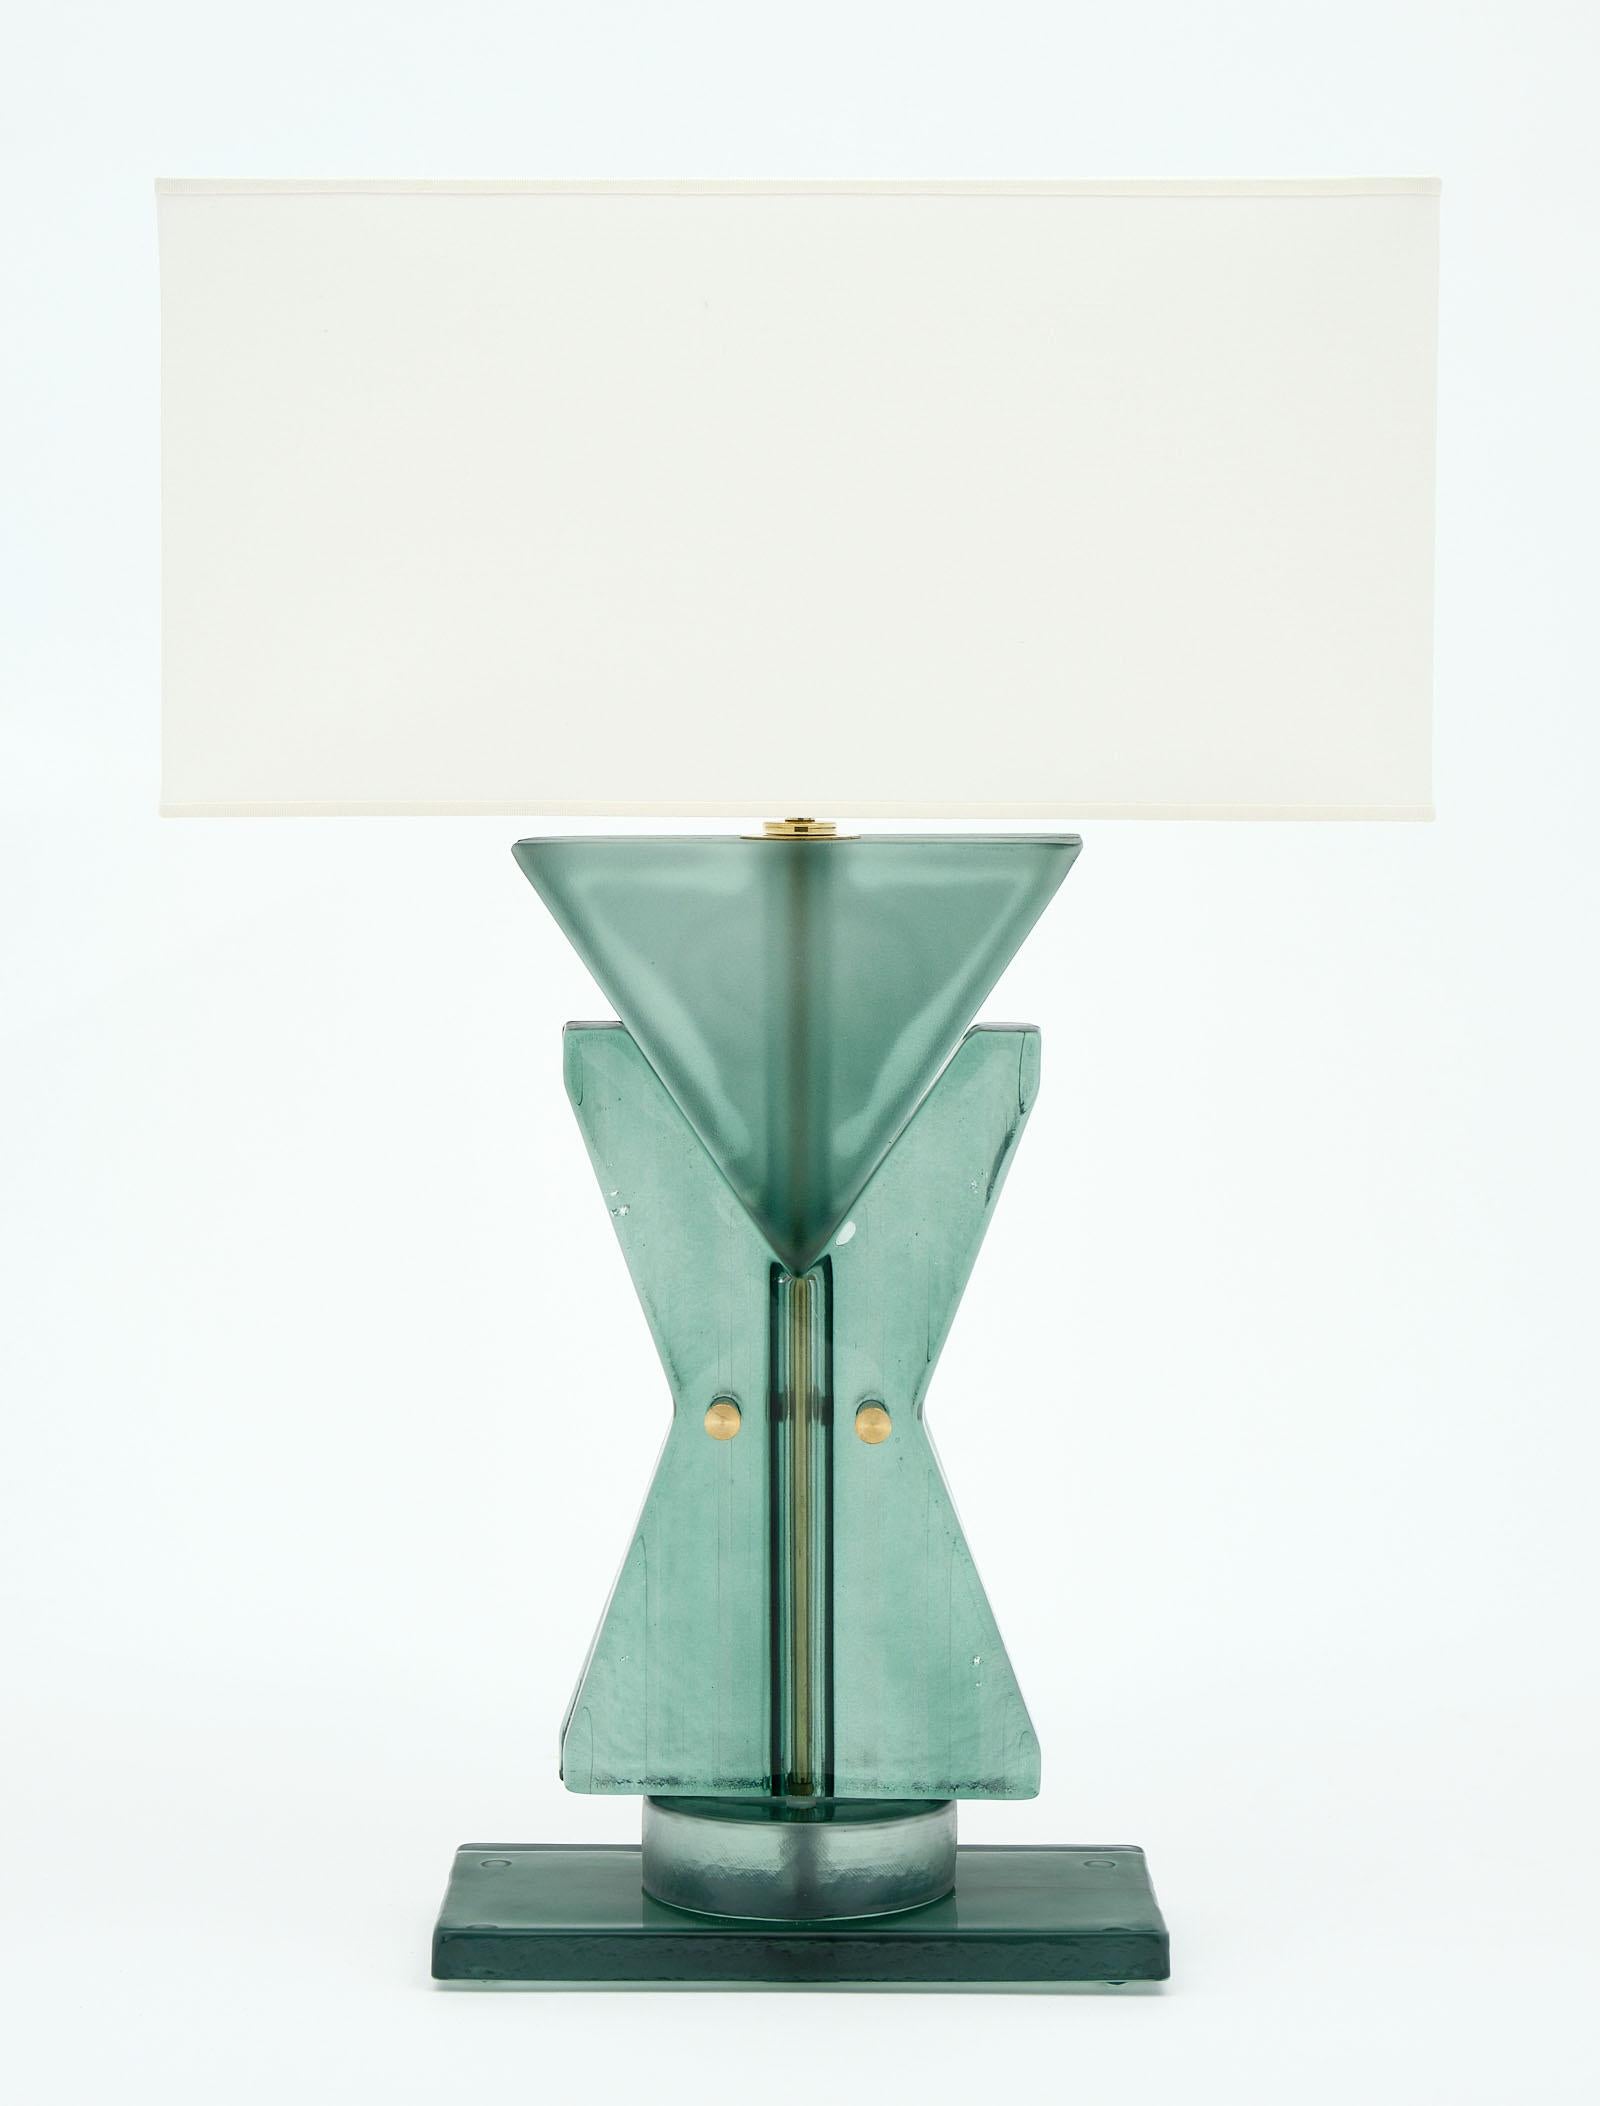 Geometrische TOTEM-Lampen aus Muranoglas in einem schönen und auffälligen blau-grünen Farbton. Wir lieben die mundgeblasenen Glaselemente und die kühne Wirkung dieses Paares. Sie wurden neu verkabelt, um den US-Normen zu entsprechen.

Dieses Paar